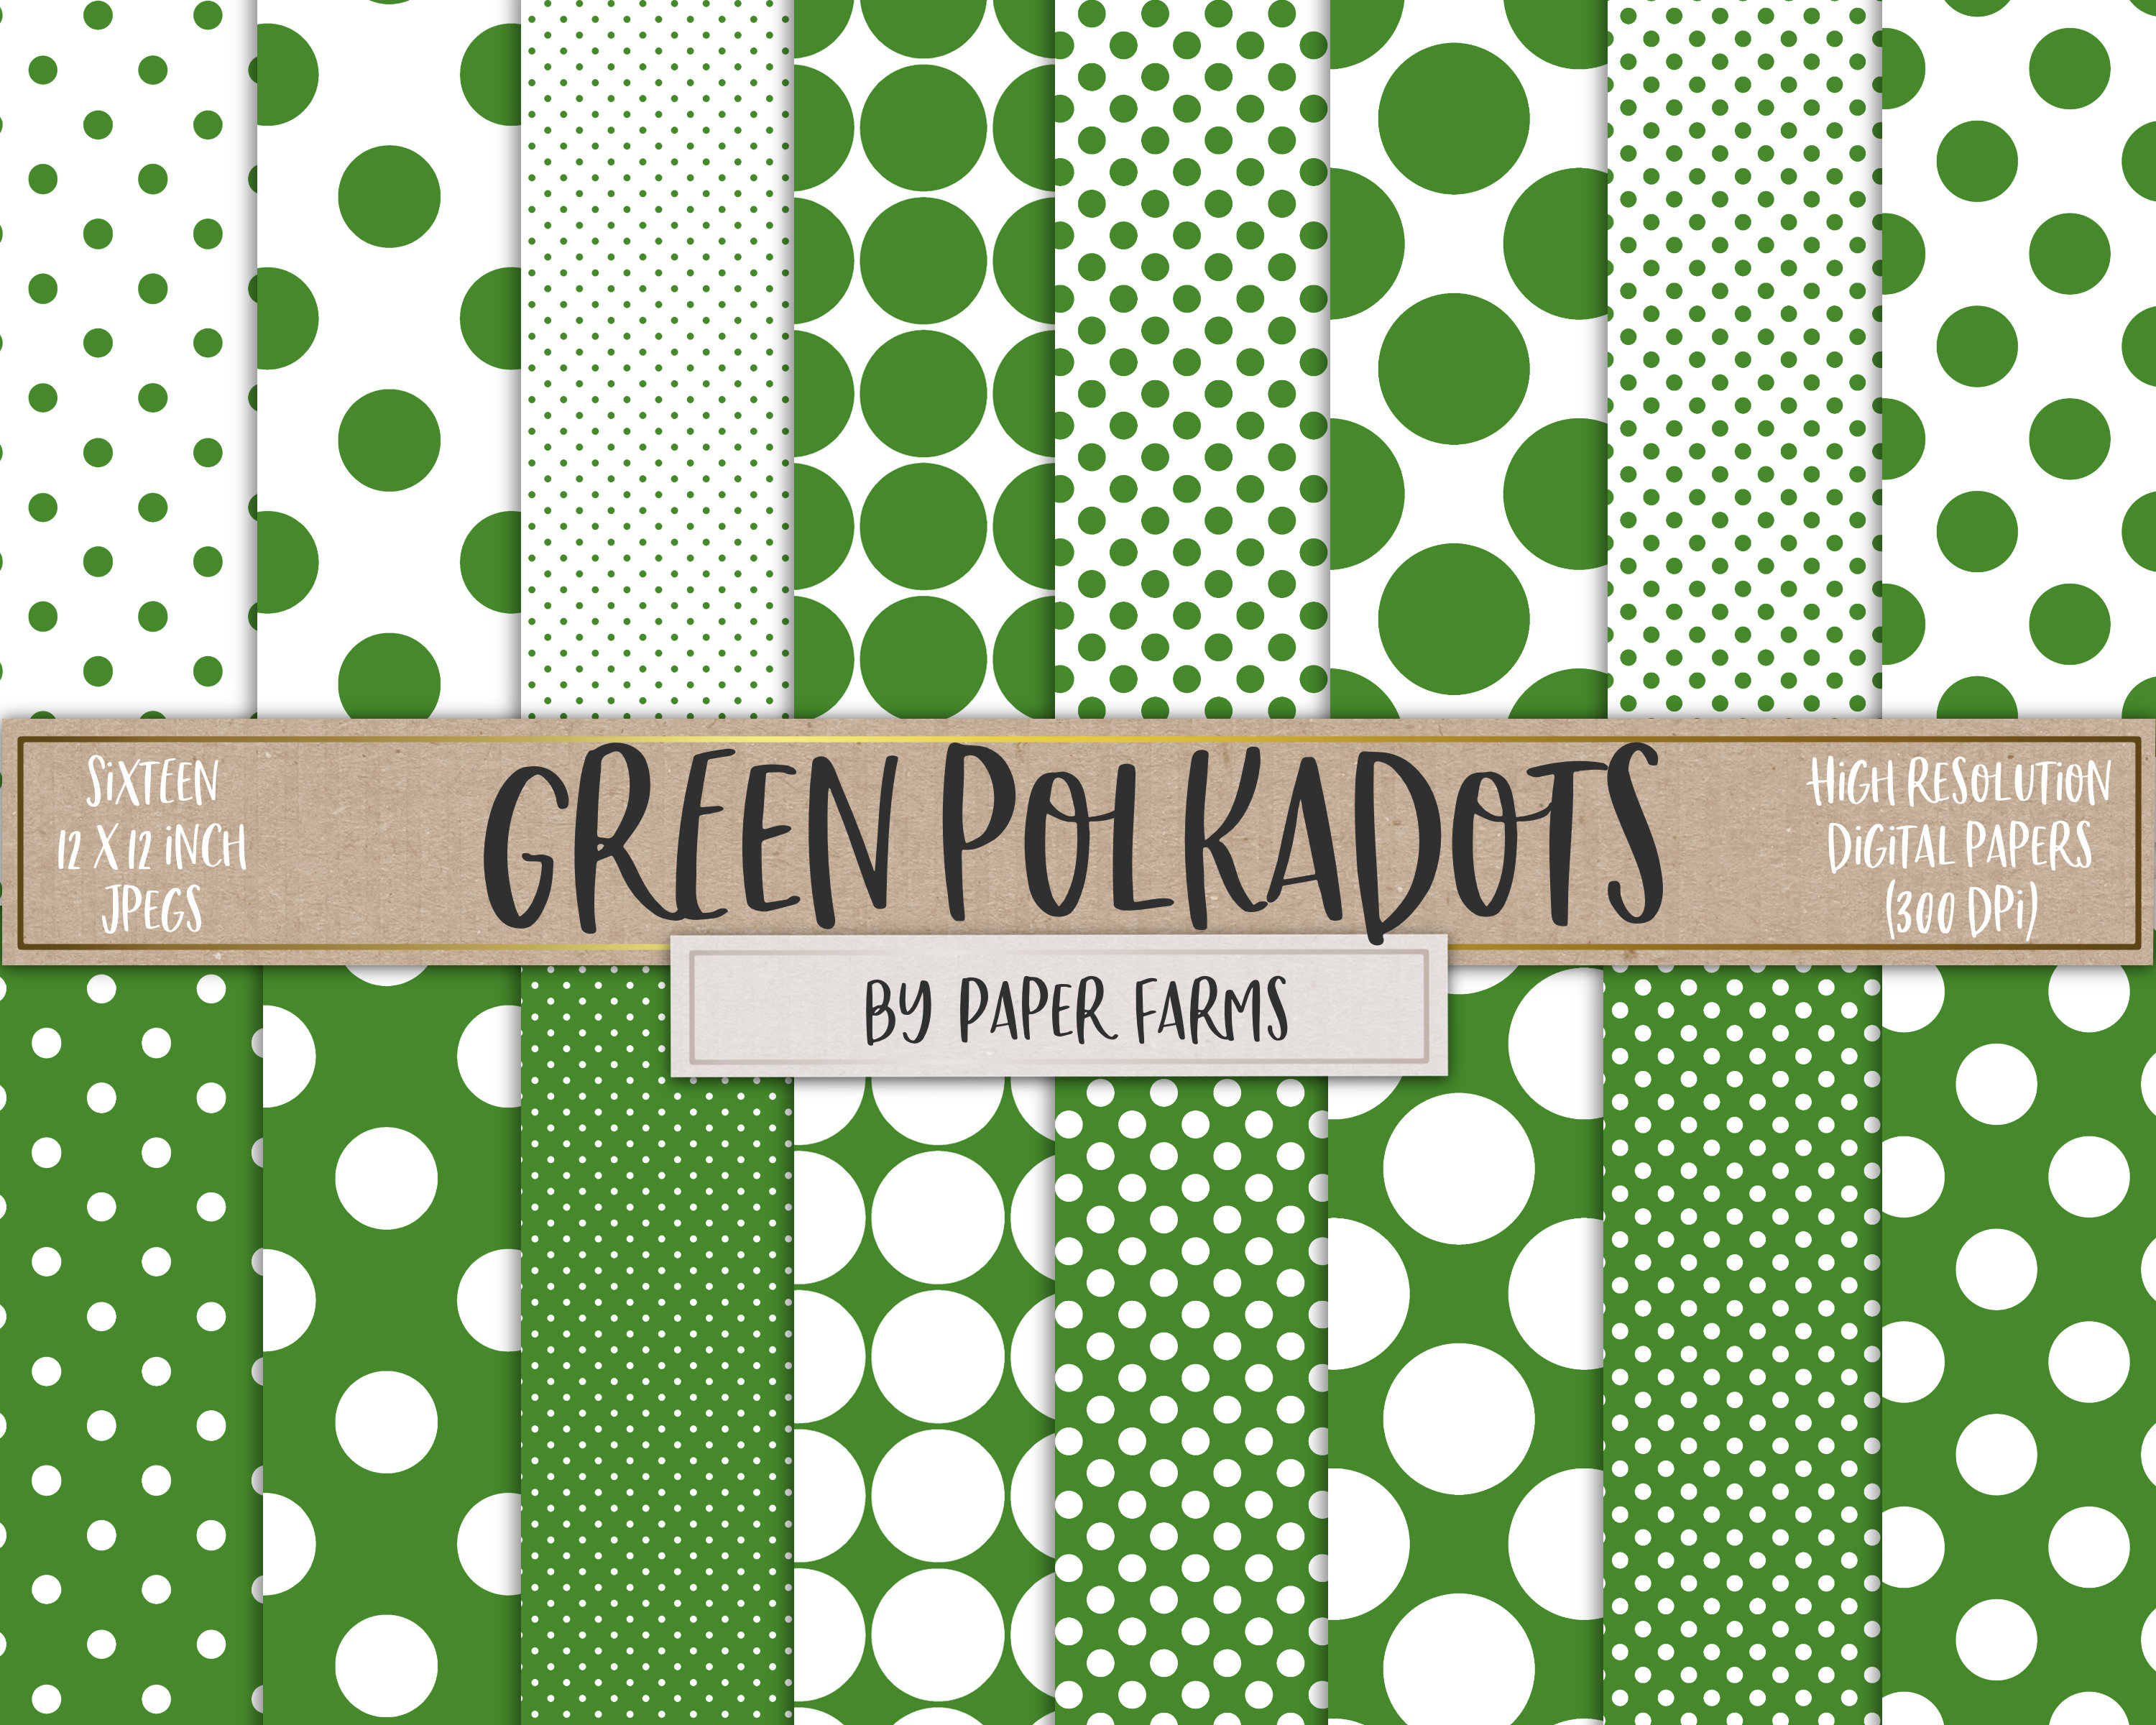 Green circles, green dots, green polka dots, polkadots, Kelly green ...